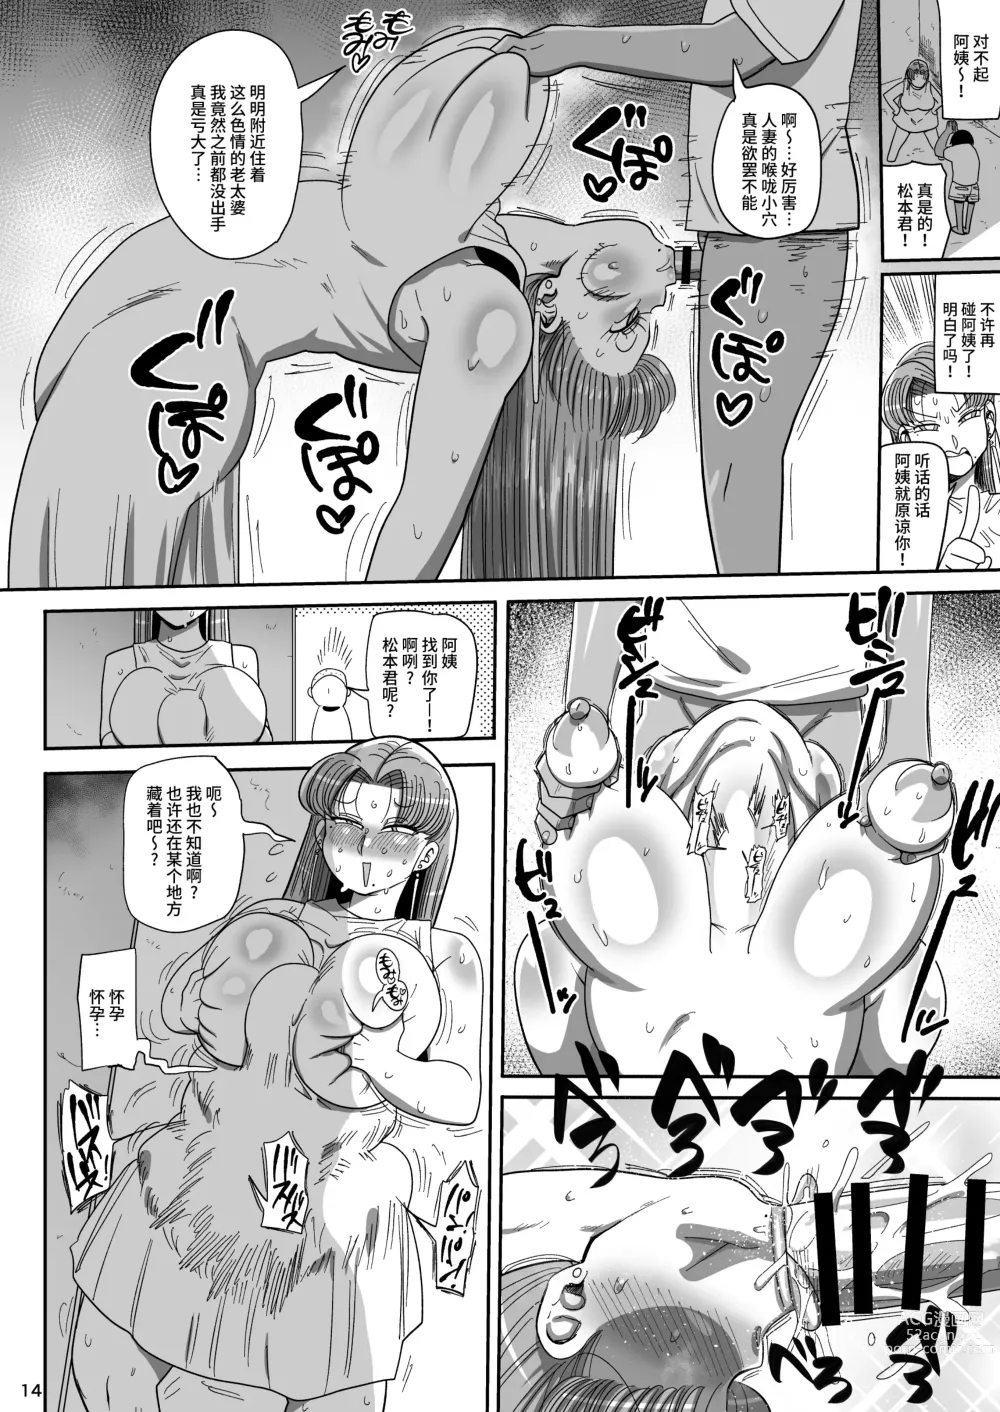 Page 13 of doujinshi Nandemo Chousa Mama Kuma Shizue ha TEIKO ga dekinai